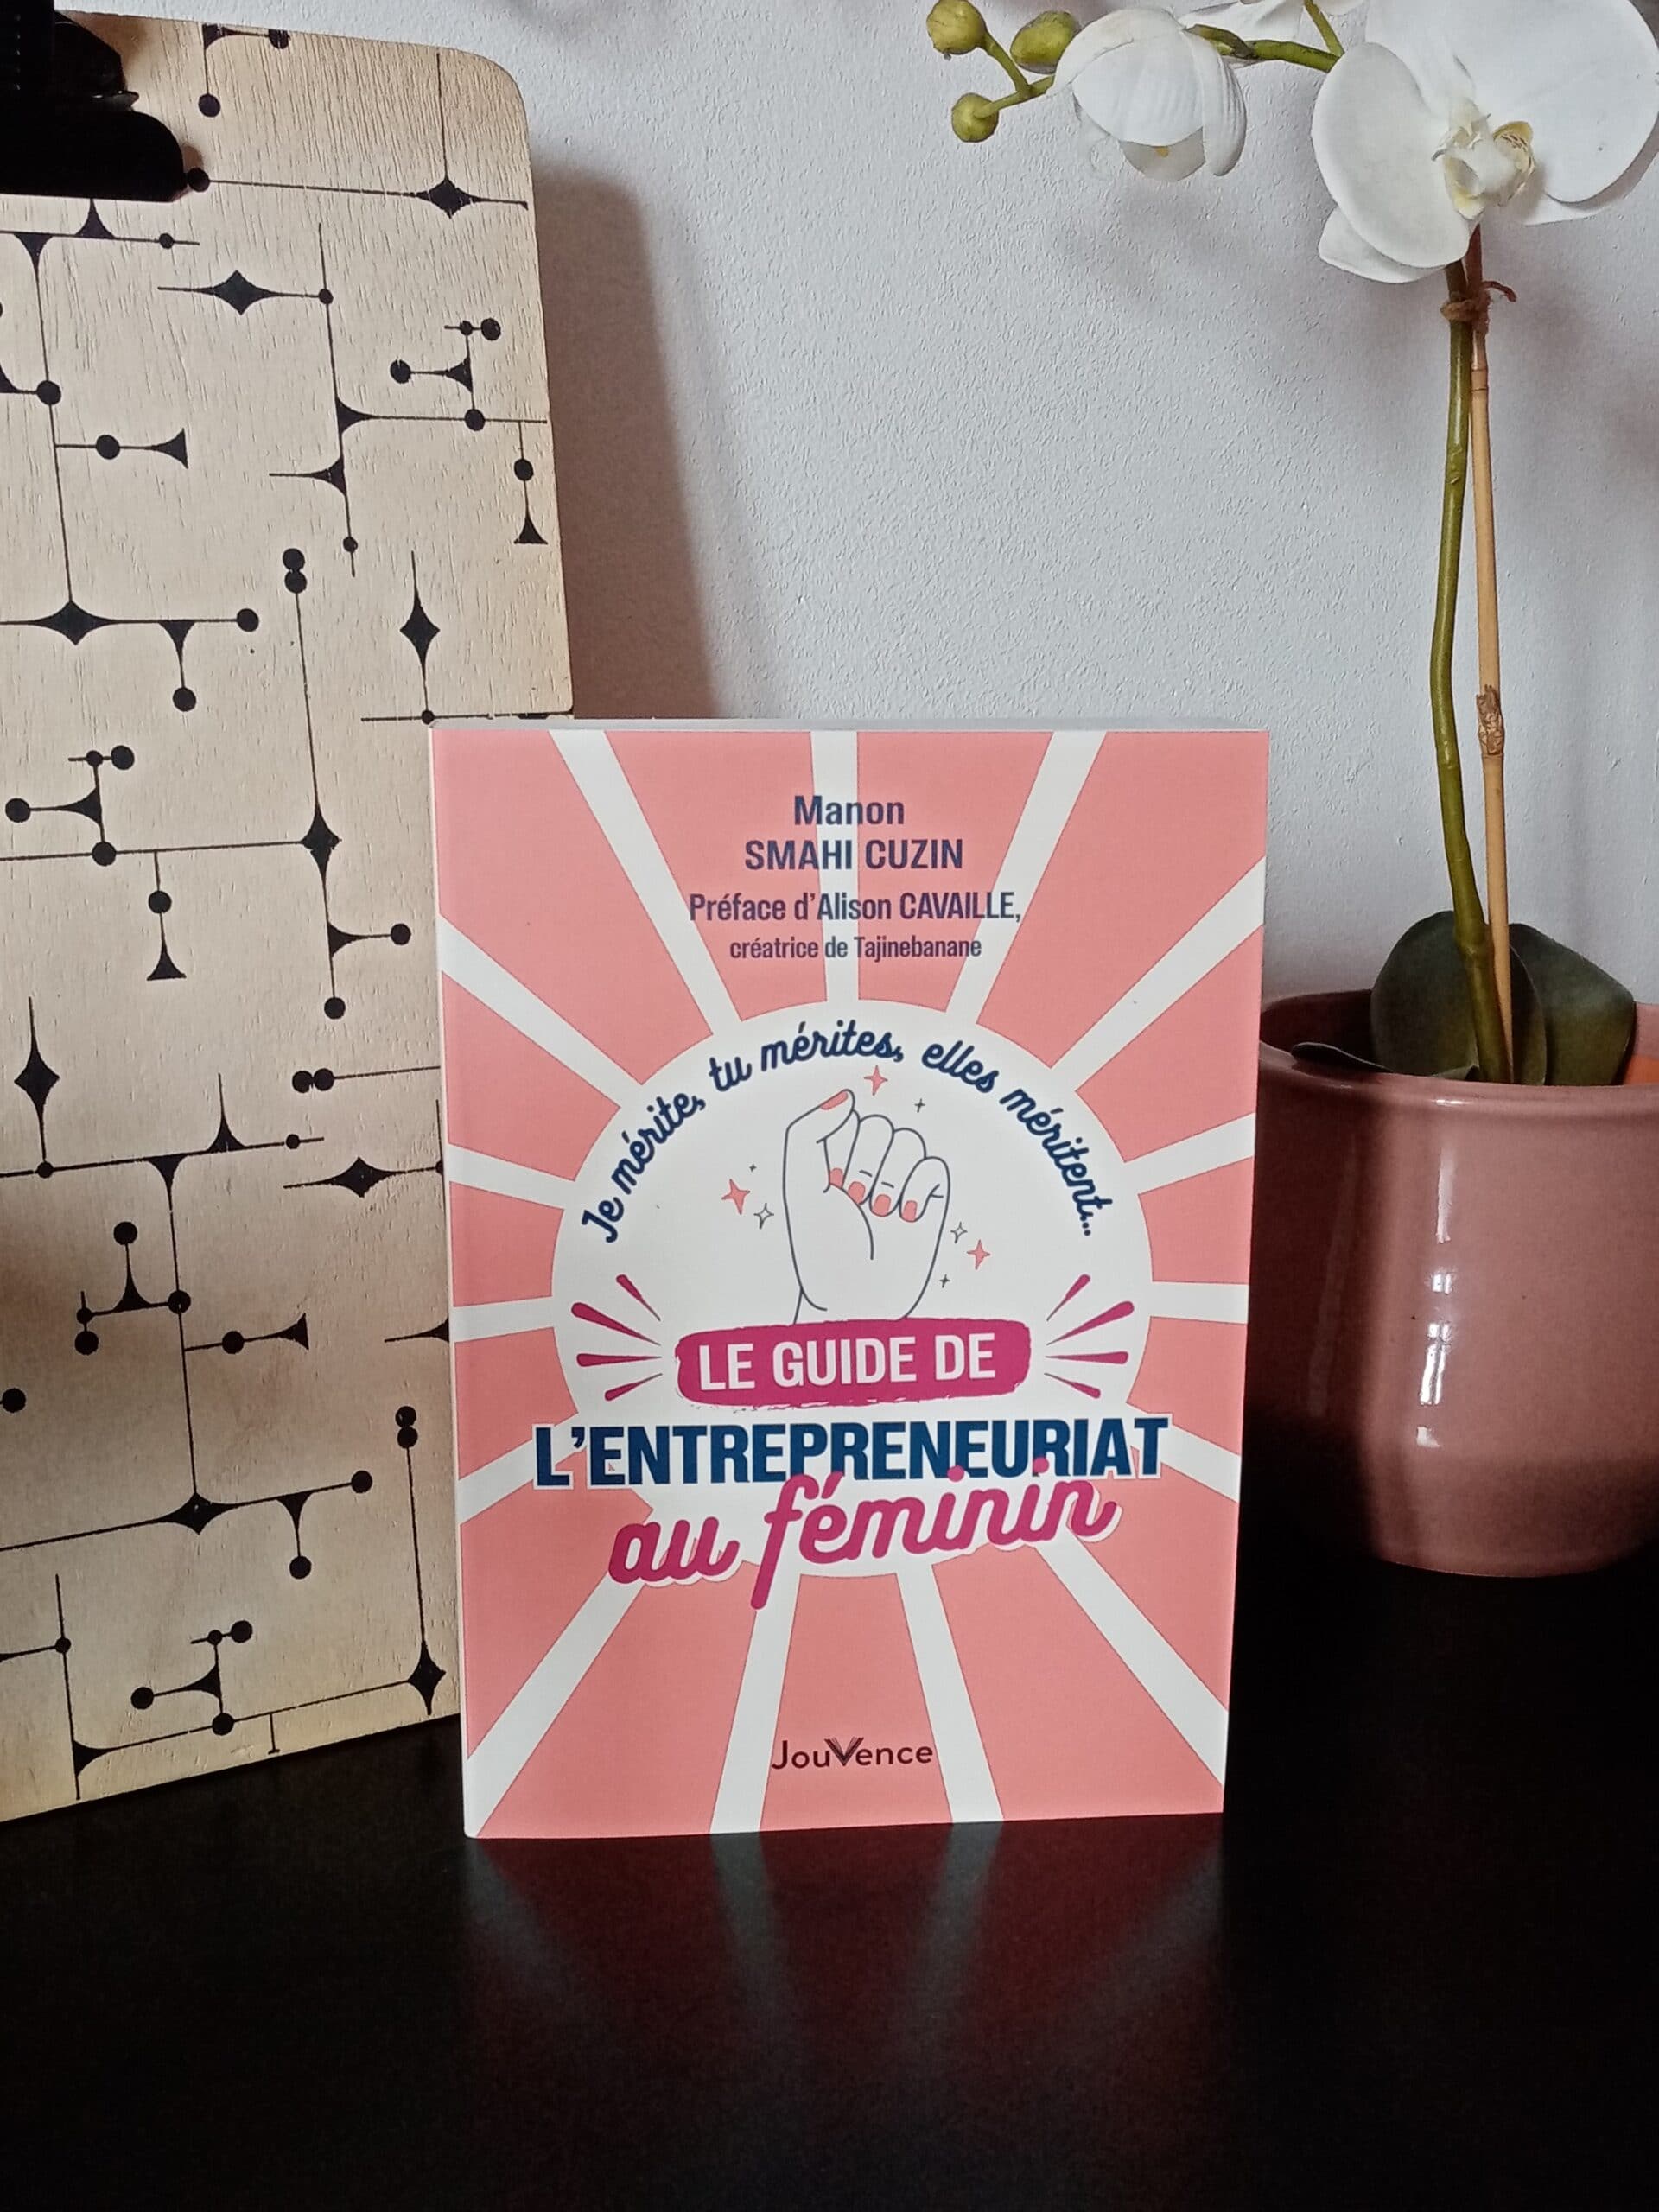 Le guide de l'entrepreneuriat au féminin - Livre publié aux éditions Jouvence